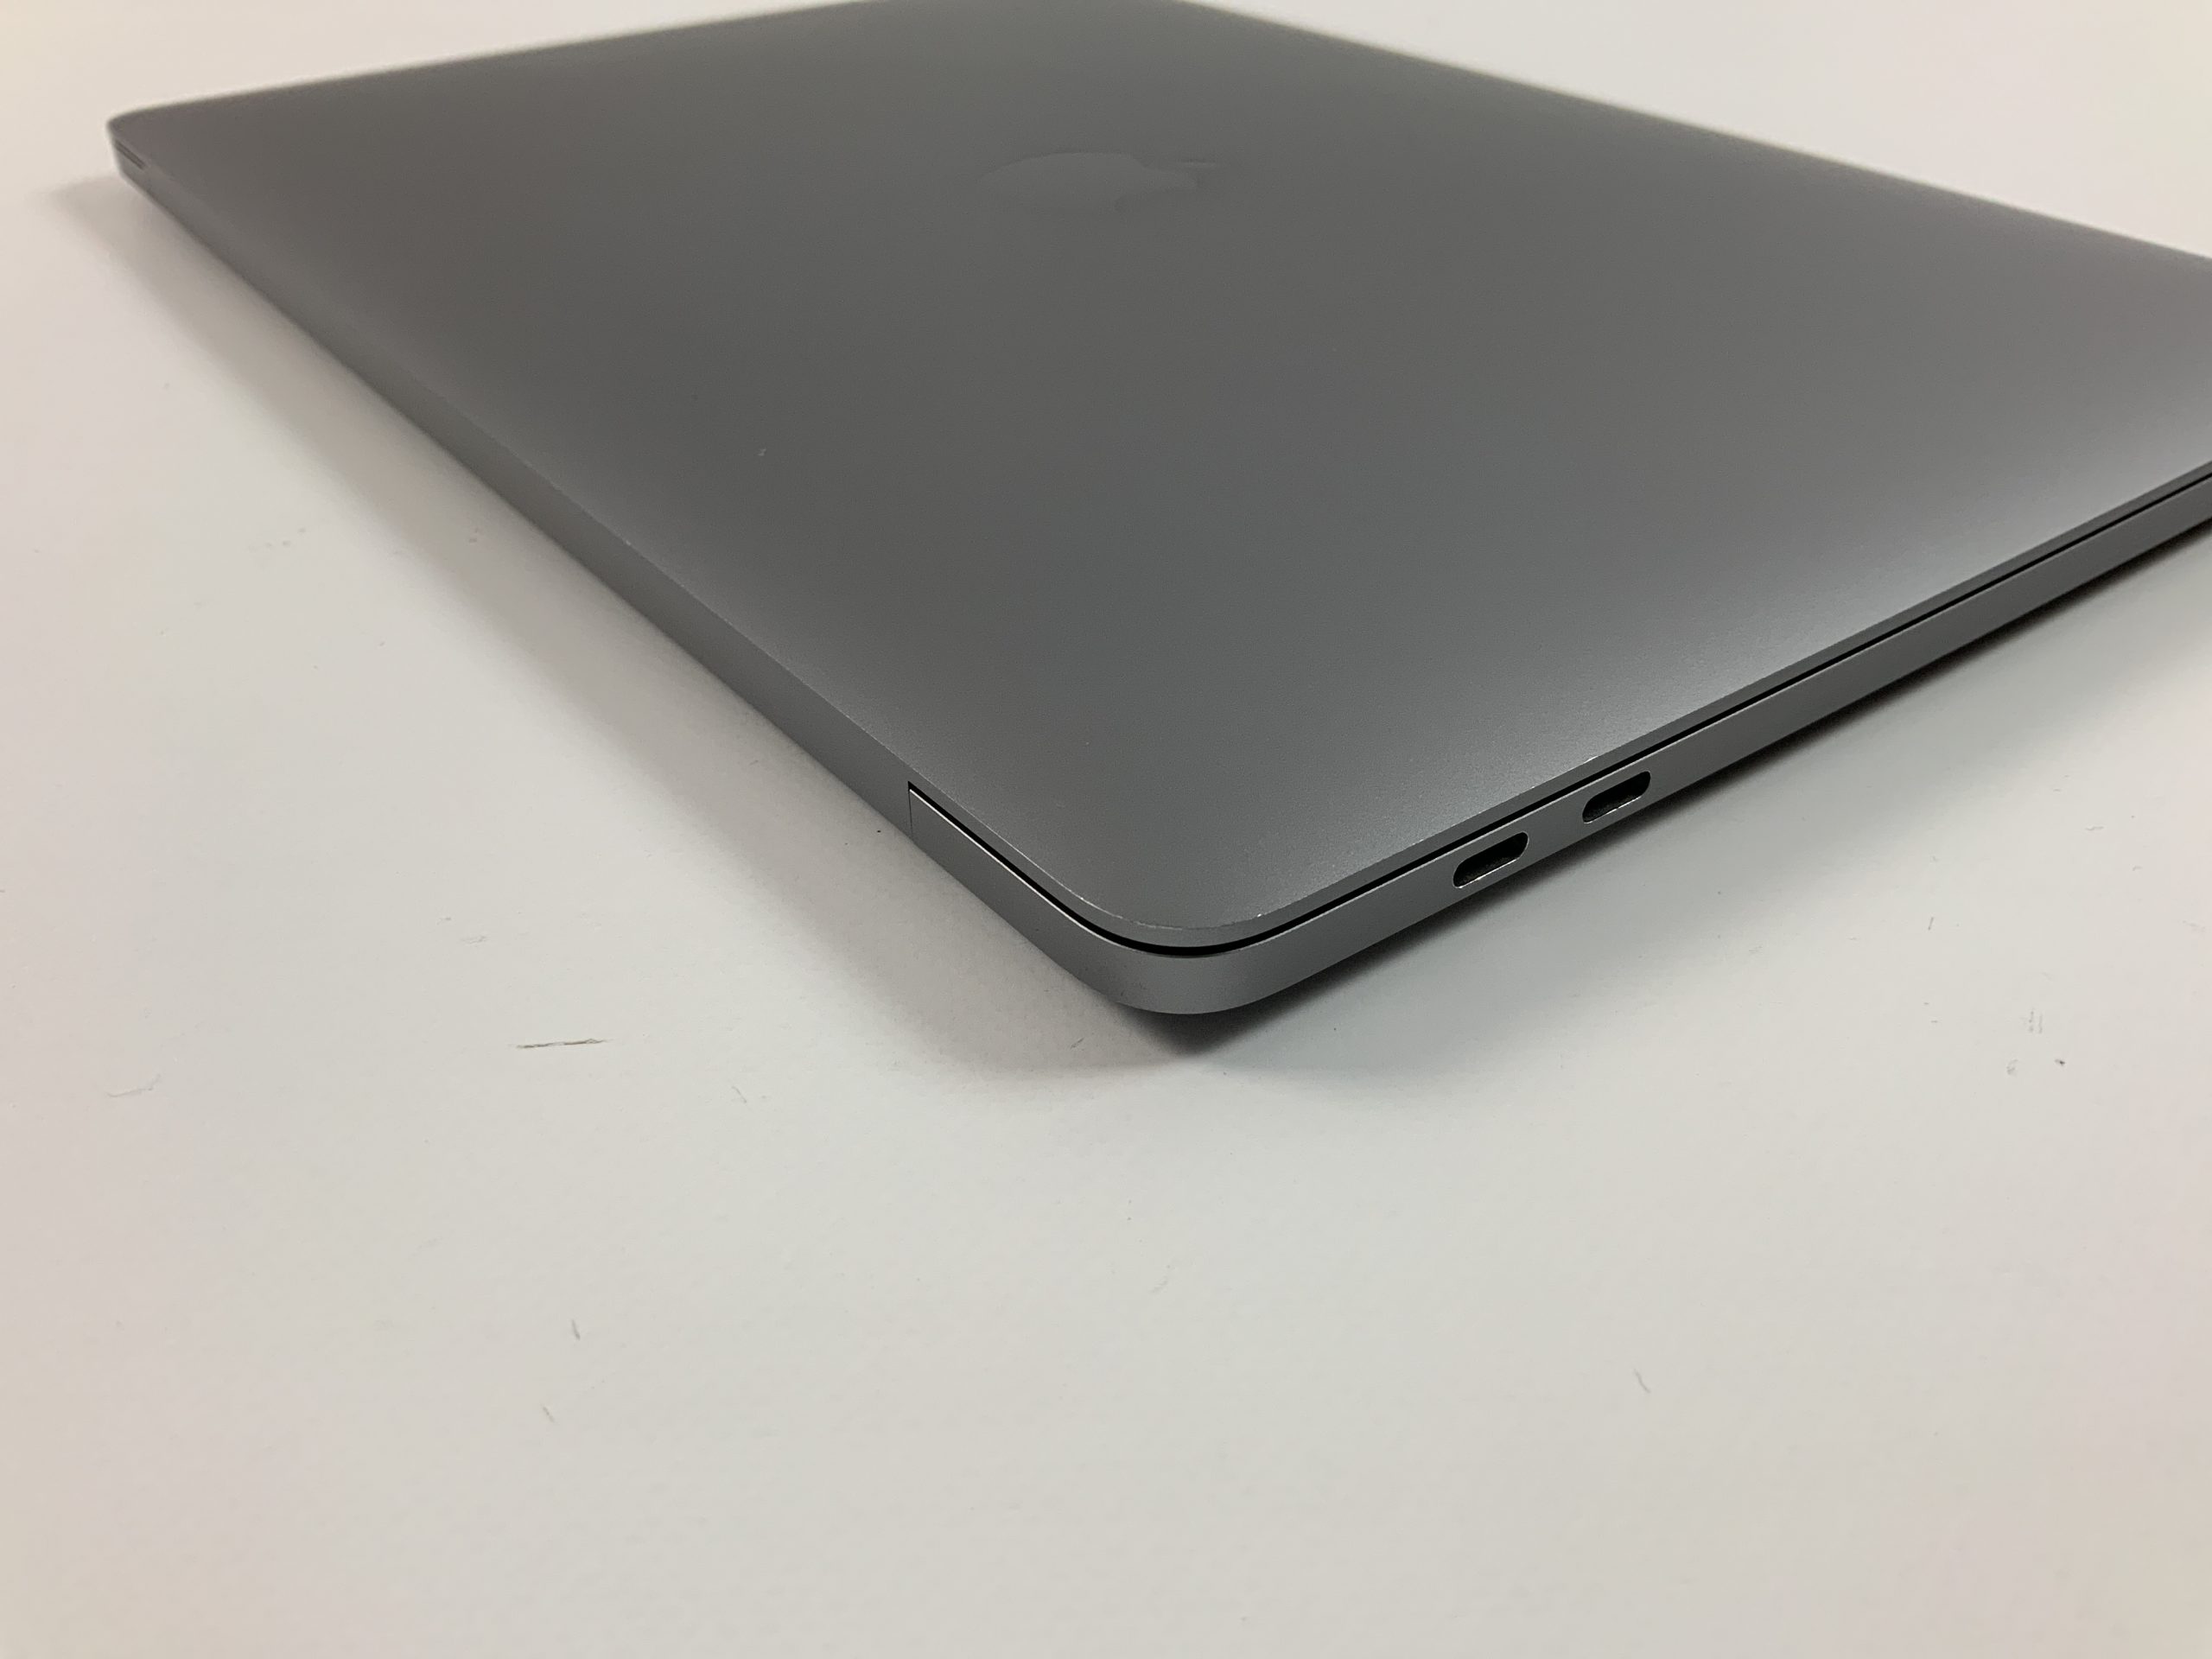 MacBook Pro 13" 4TBT Mid 2018 (Intel Quad-Core i7 2.7 GHz 16 GB RAM 1 TB SSD), Space Gray, Intel Quad-Core i7 2.7 GHz, 16 GB RAM, 1 TB SSD, immagine 4